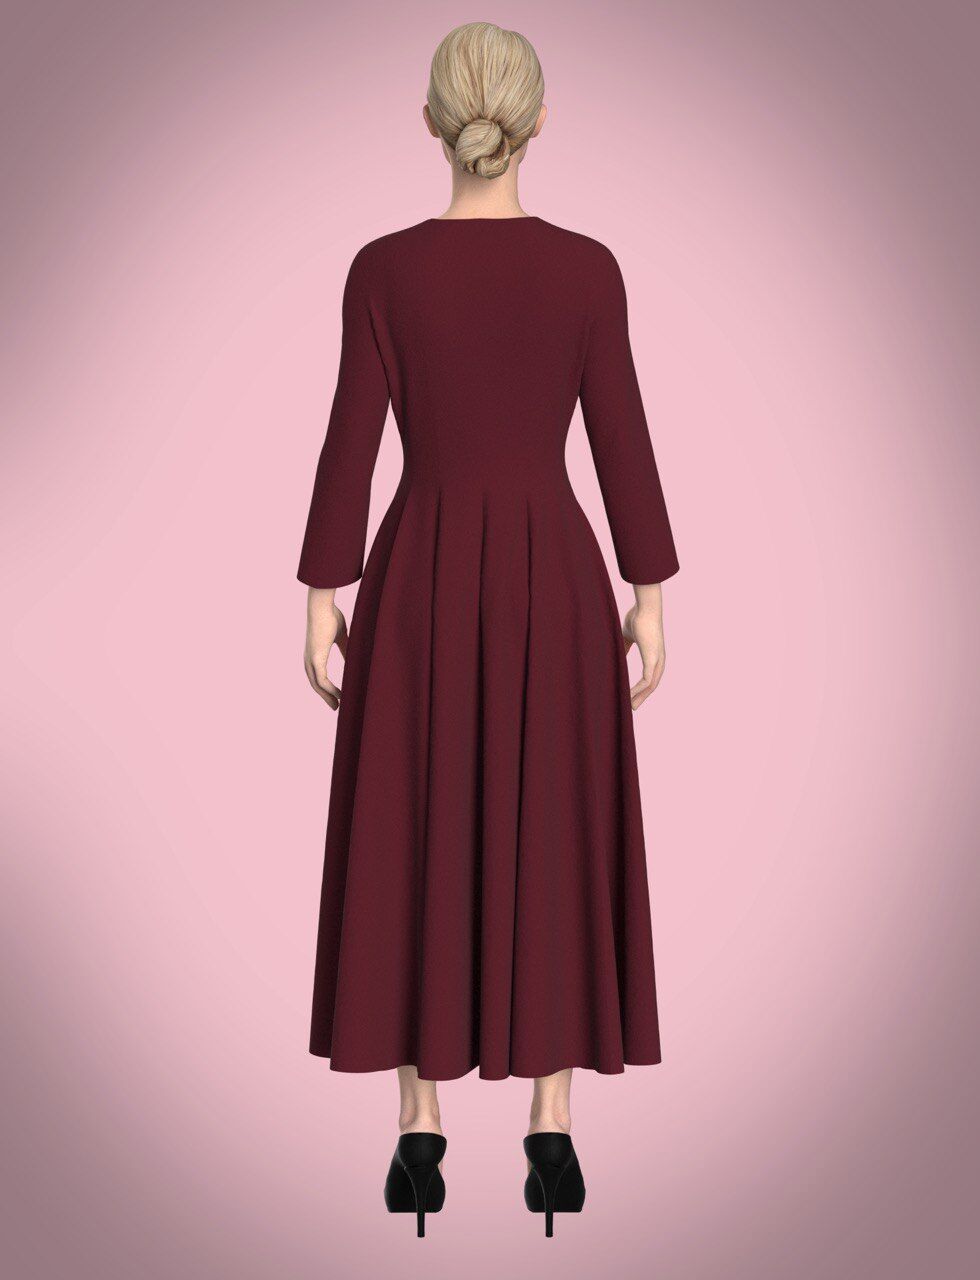 Dress, pattern №771 buy online